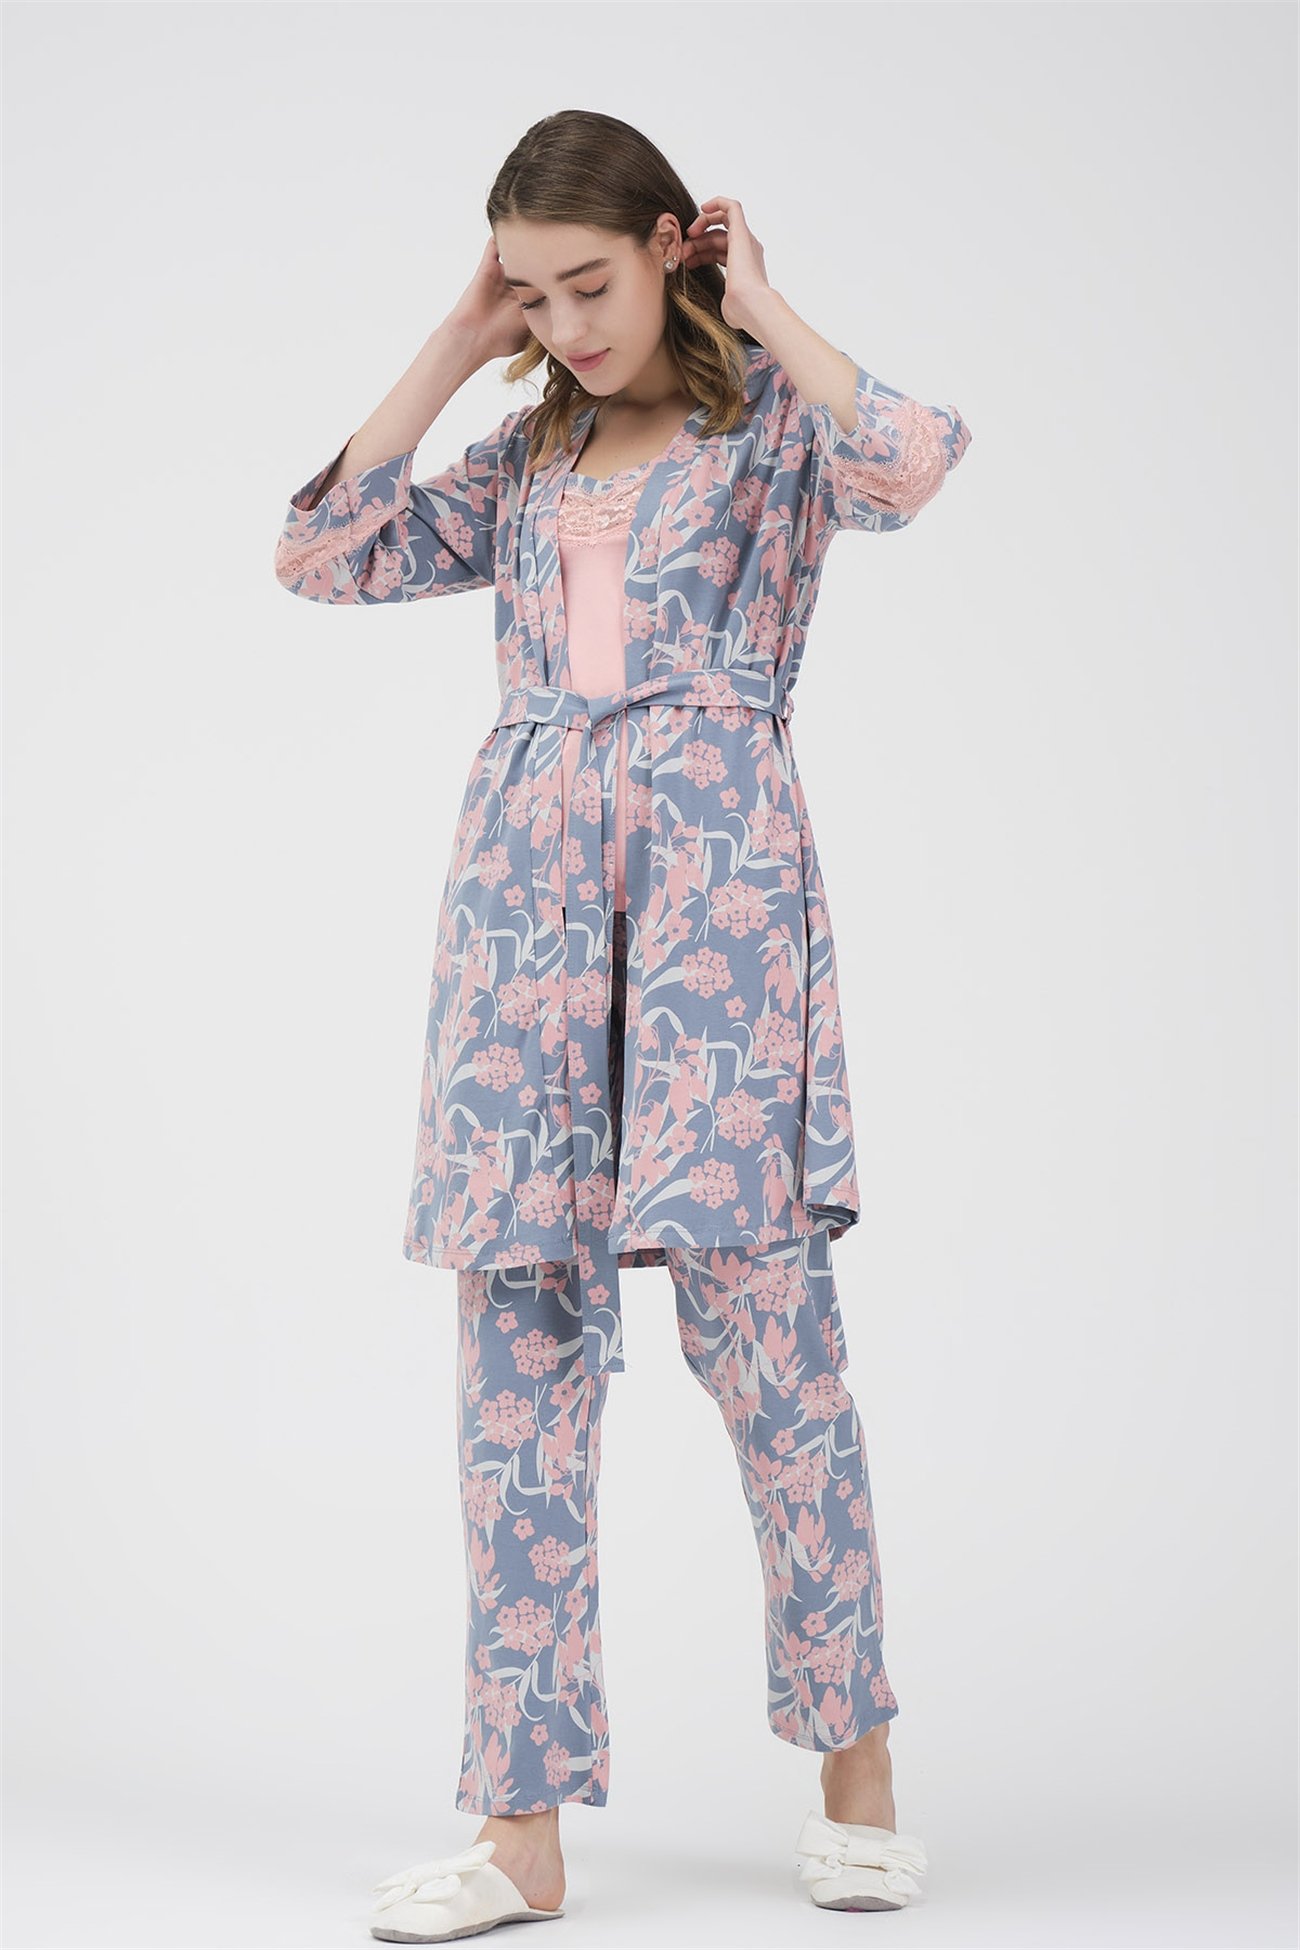 Baykar Kadın Çiçekli Üçlü Pijama Takımı 9440 Mavi - Baykaronline